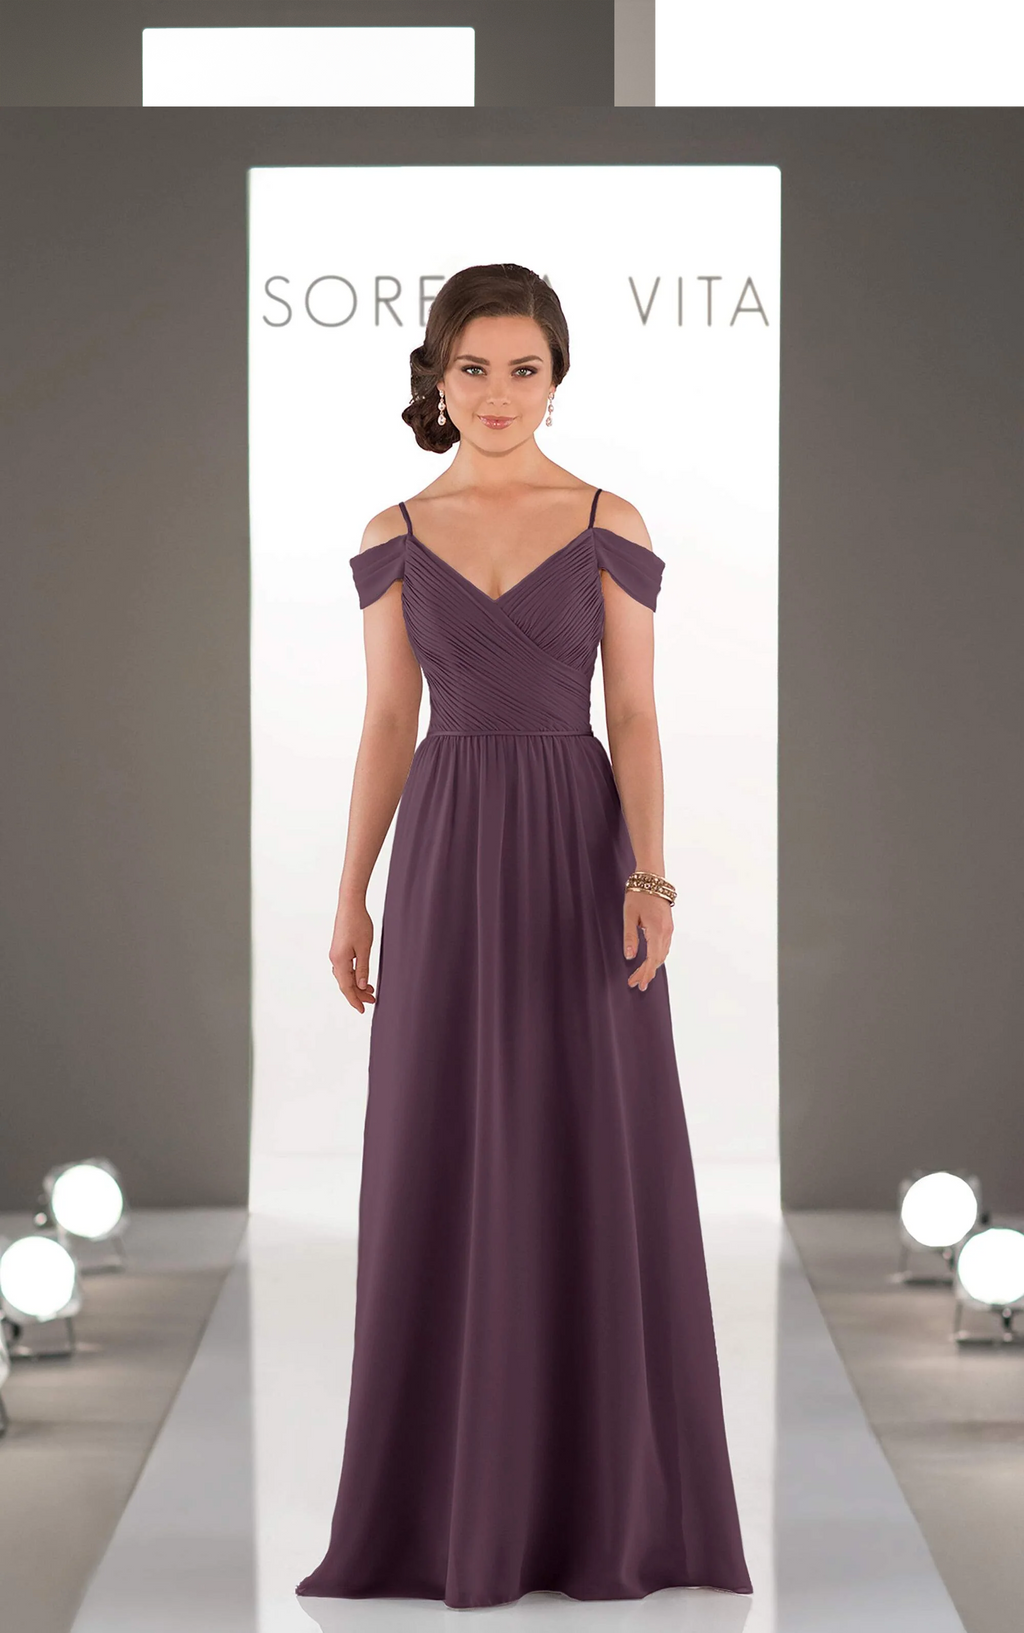 Sorella Vita Dress Style 8922 (Aubergine-Size 20) Prom, Ball., Black-tie, Bridesmaid, Pageant